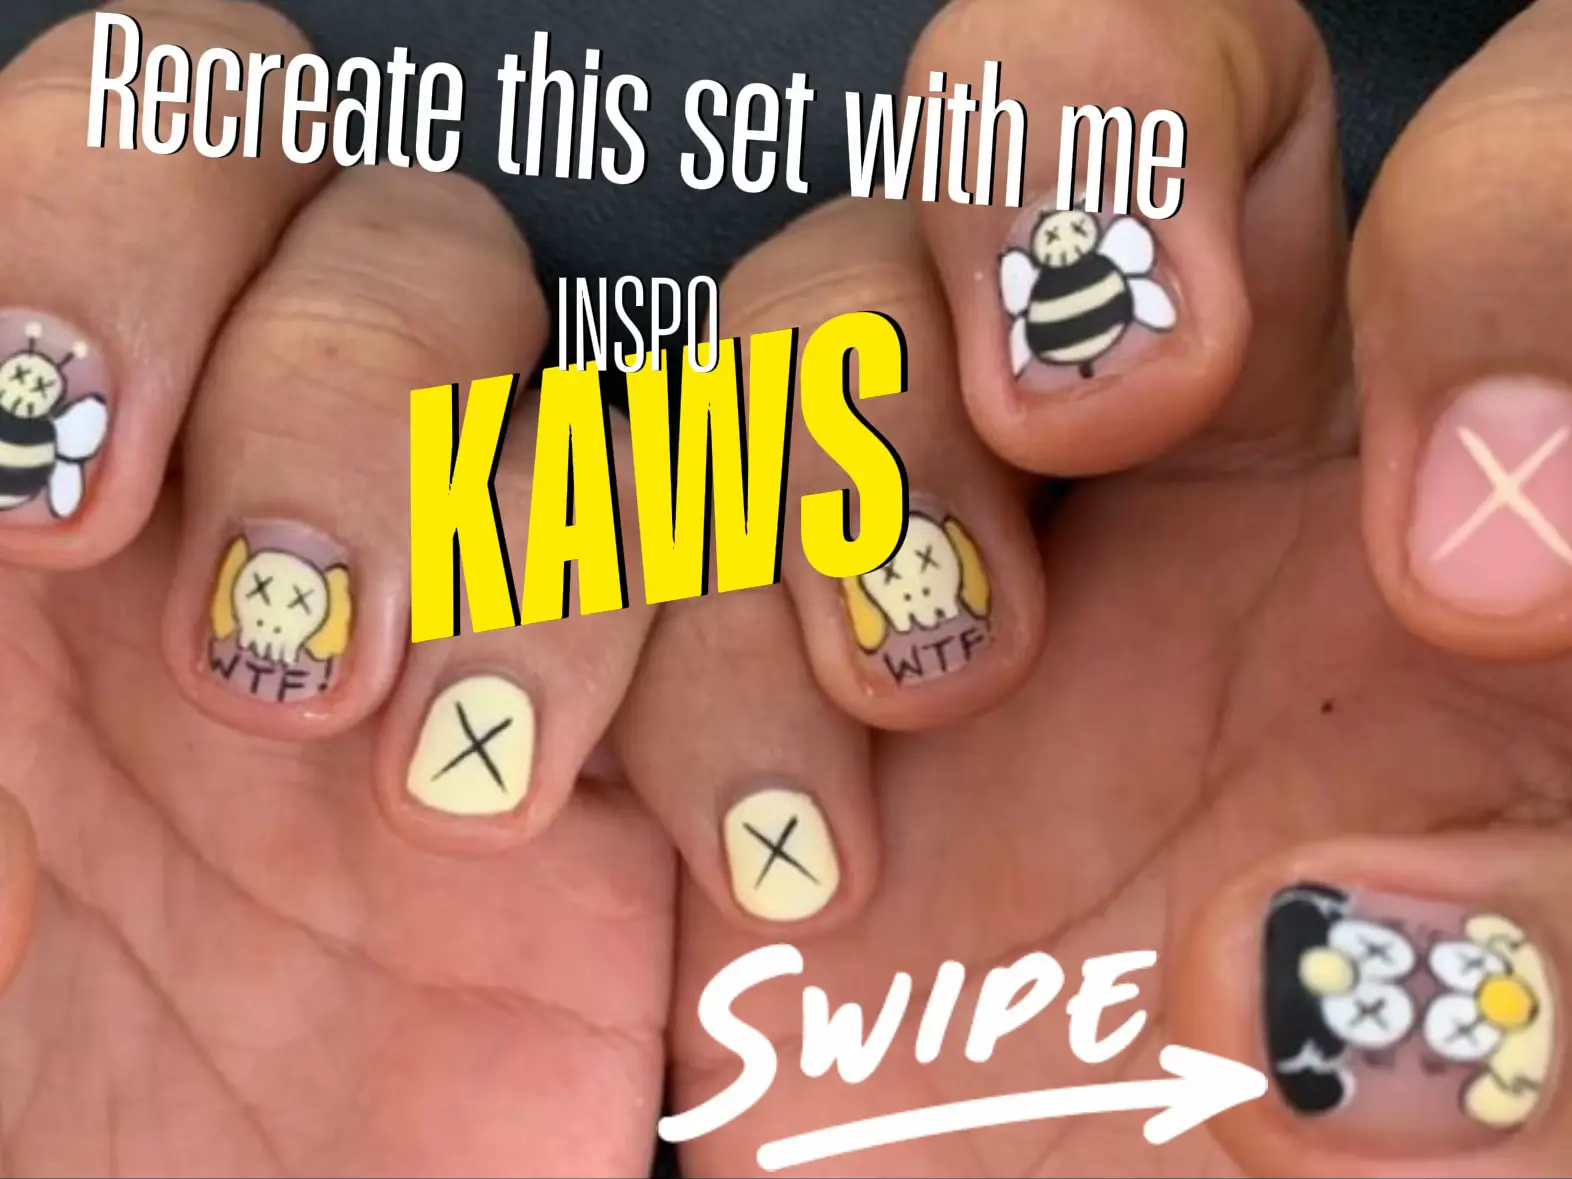 kaws nail charms  - Lemon8 Search